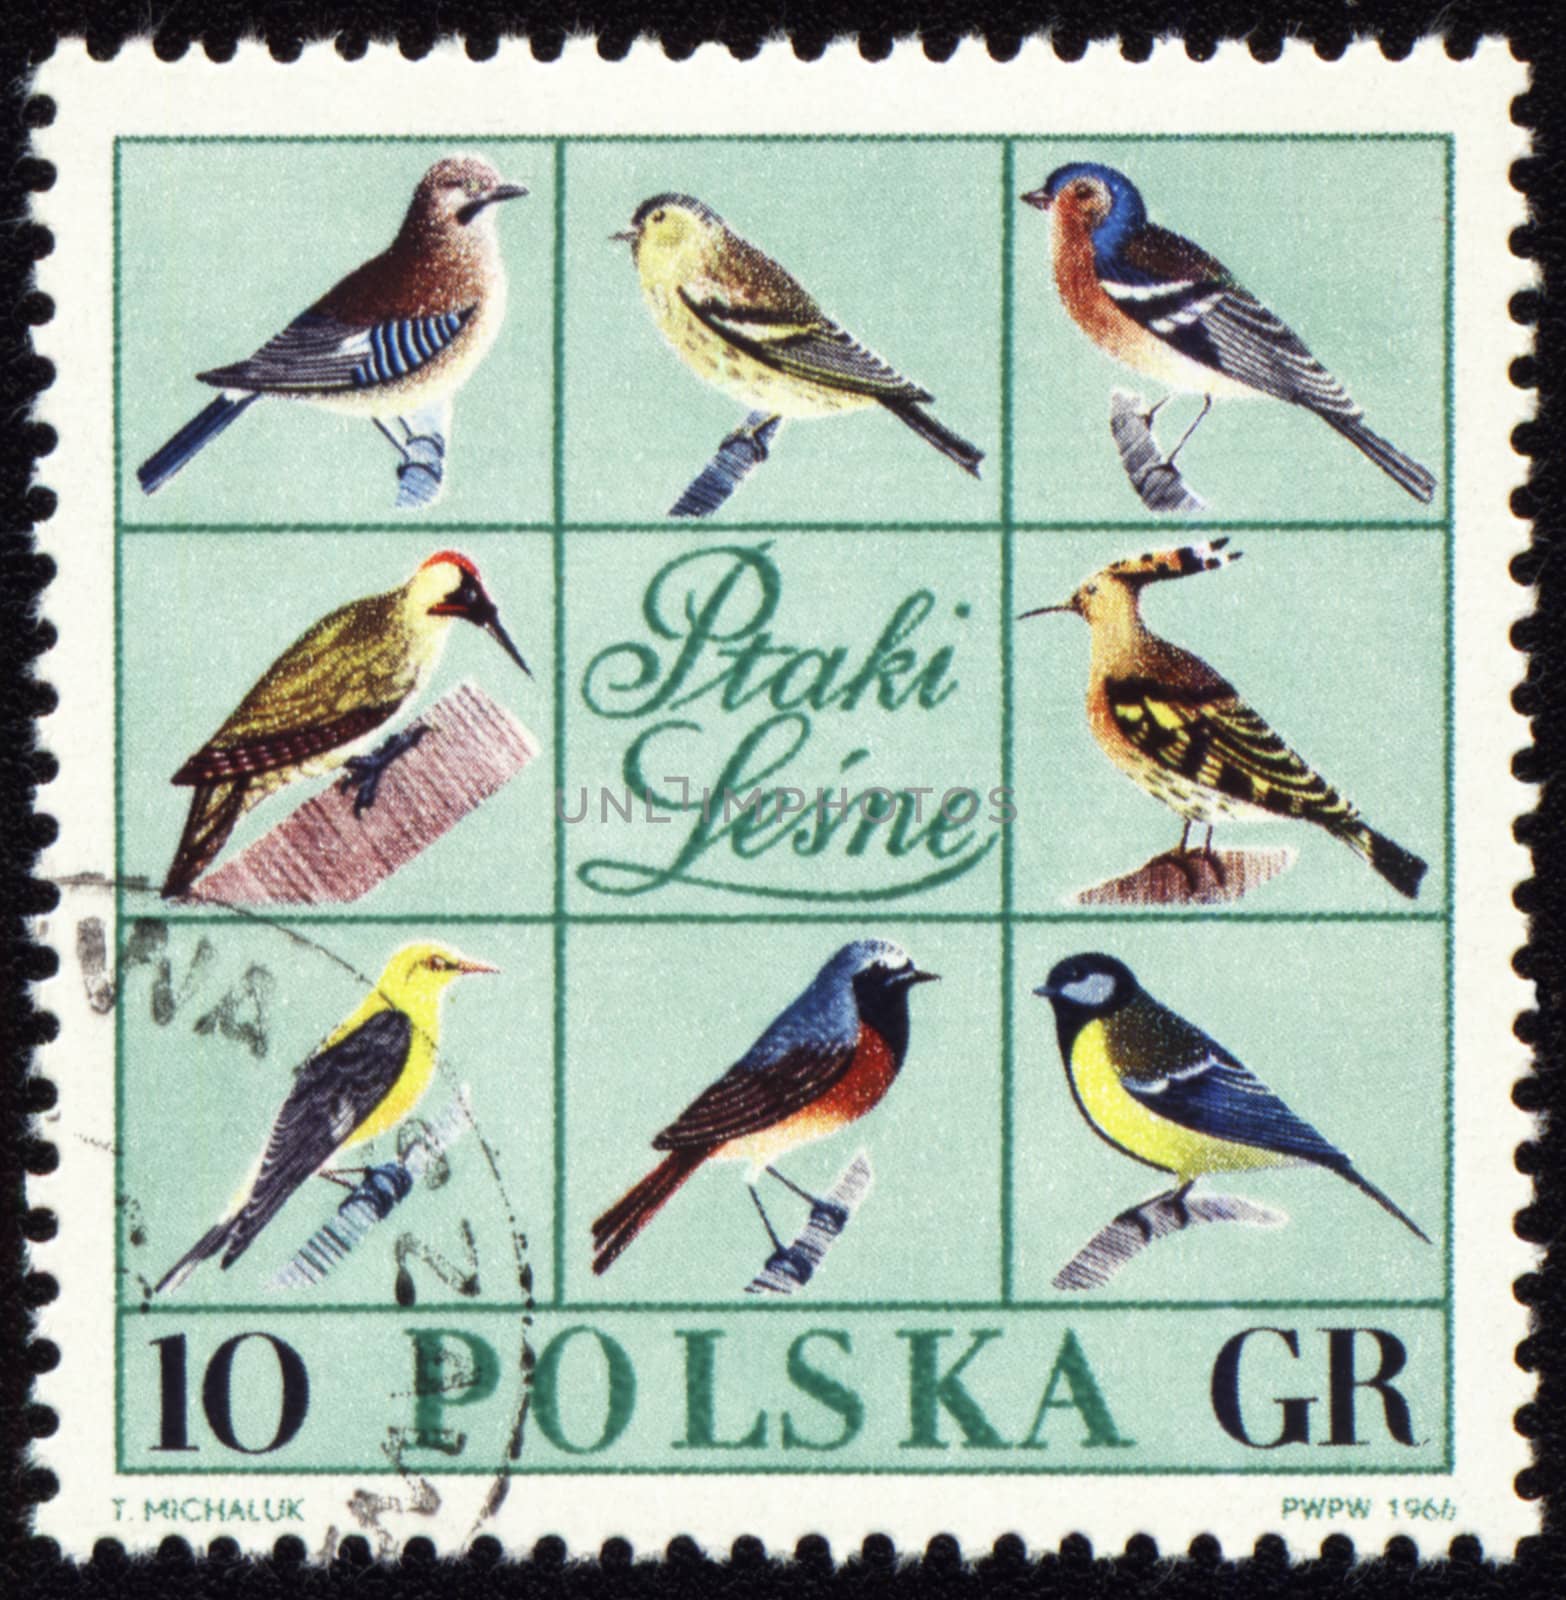 POLAND - CIRCA 1966: stamp printed in Poland, shows Forest birds, series, circa 1966